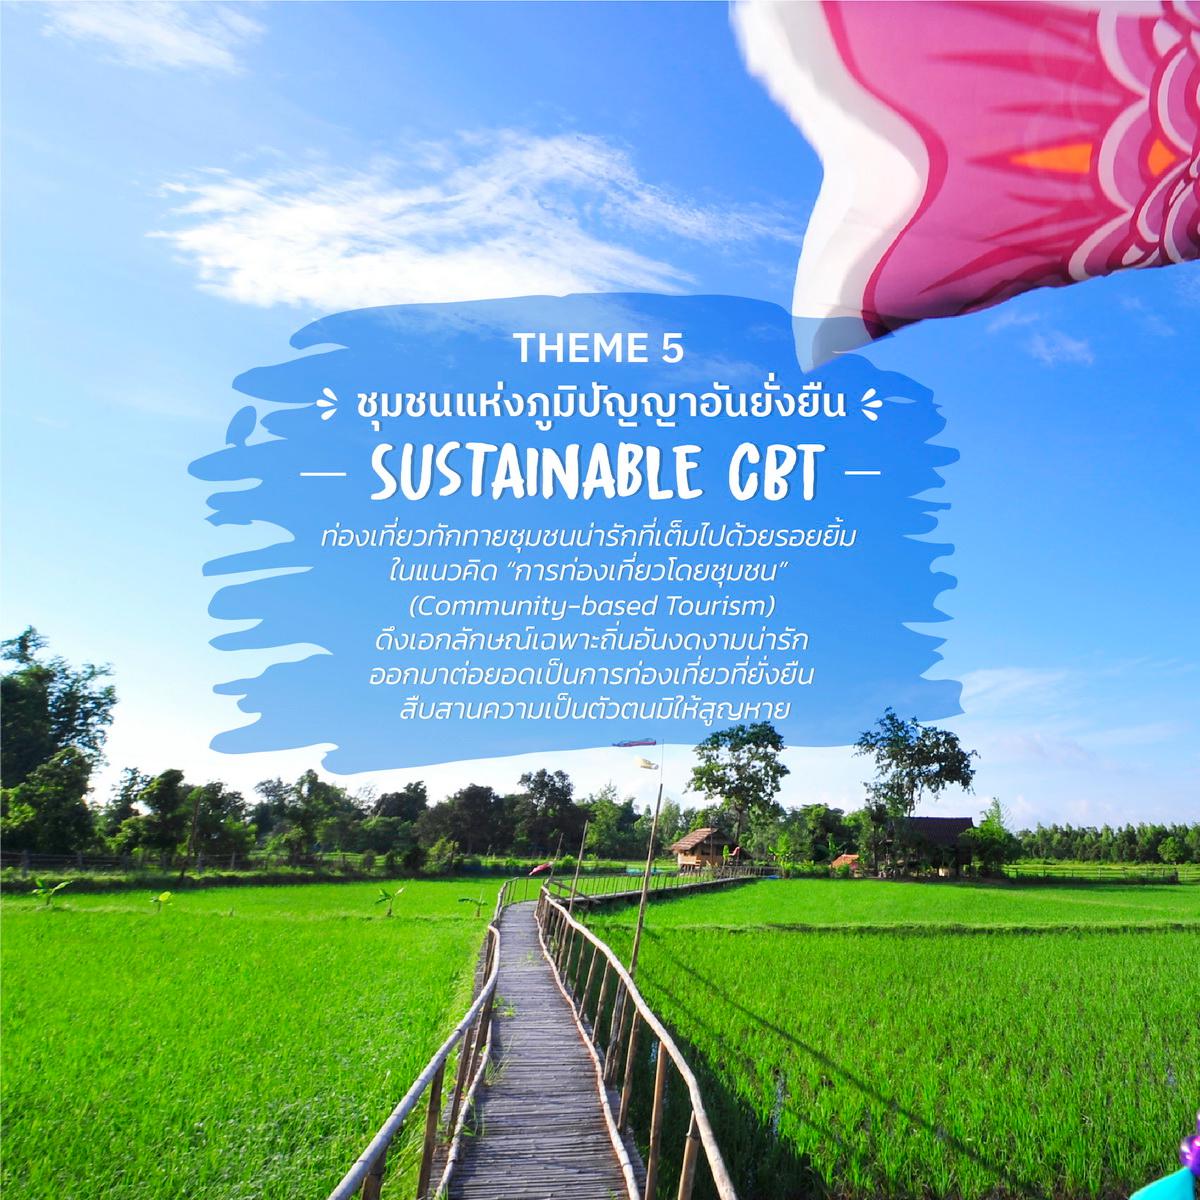 เมืองไทย “ชุมชนแห่งภูมิปัญญาอันยั่งยืน” - Sustainable CBT